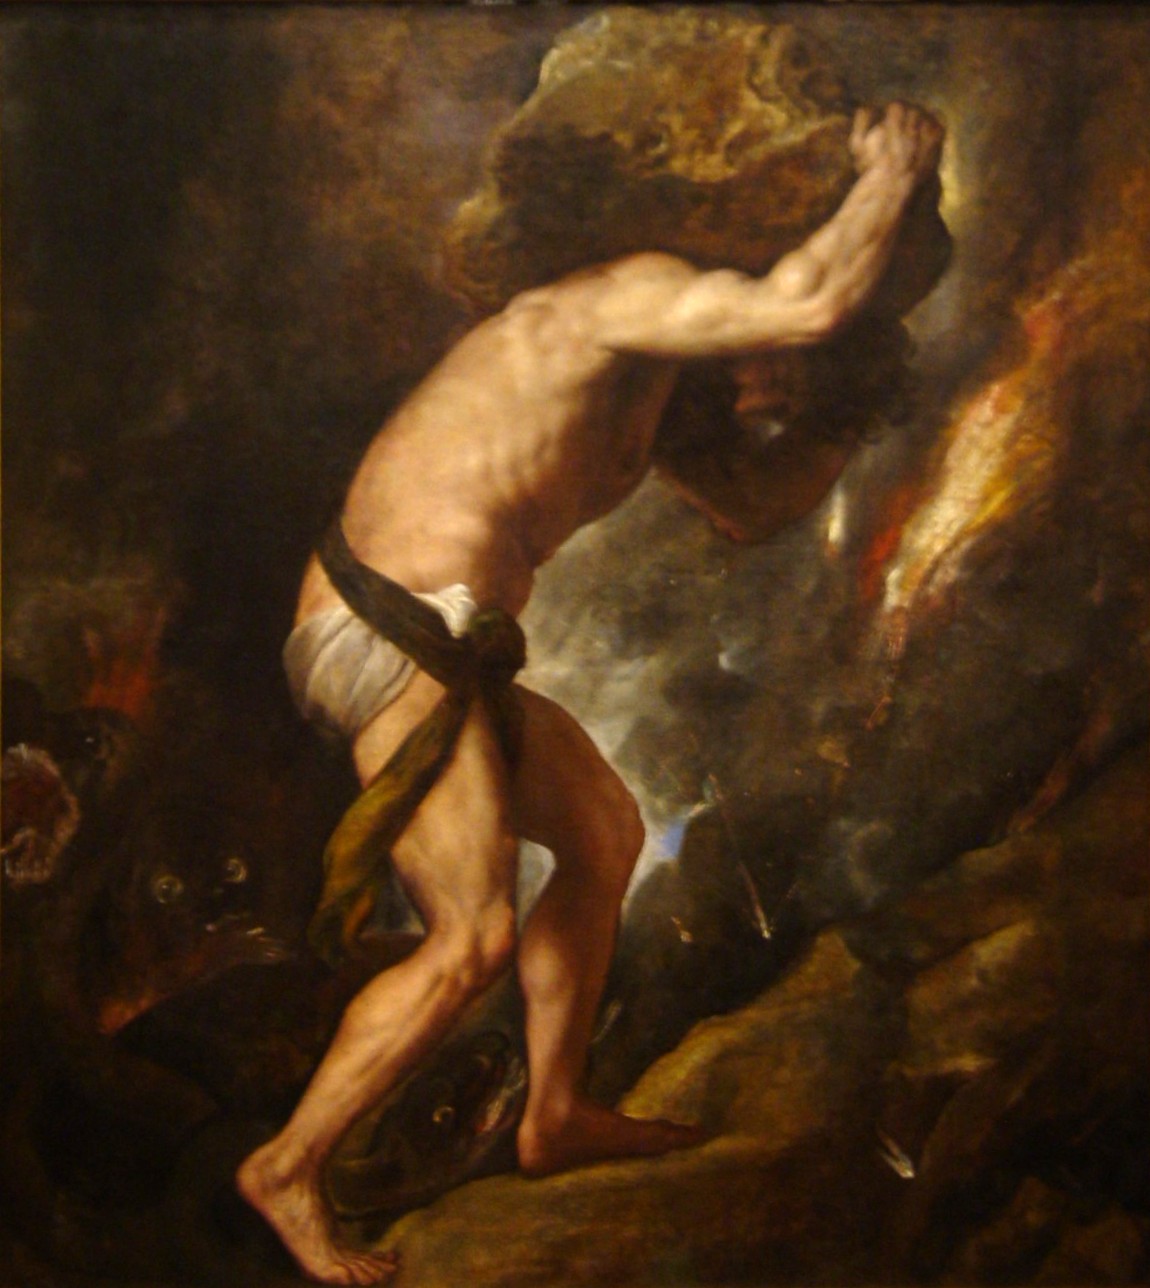 Sisyphus by Titian, 1549